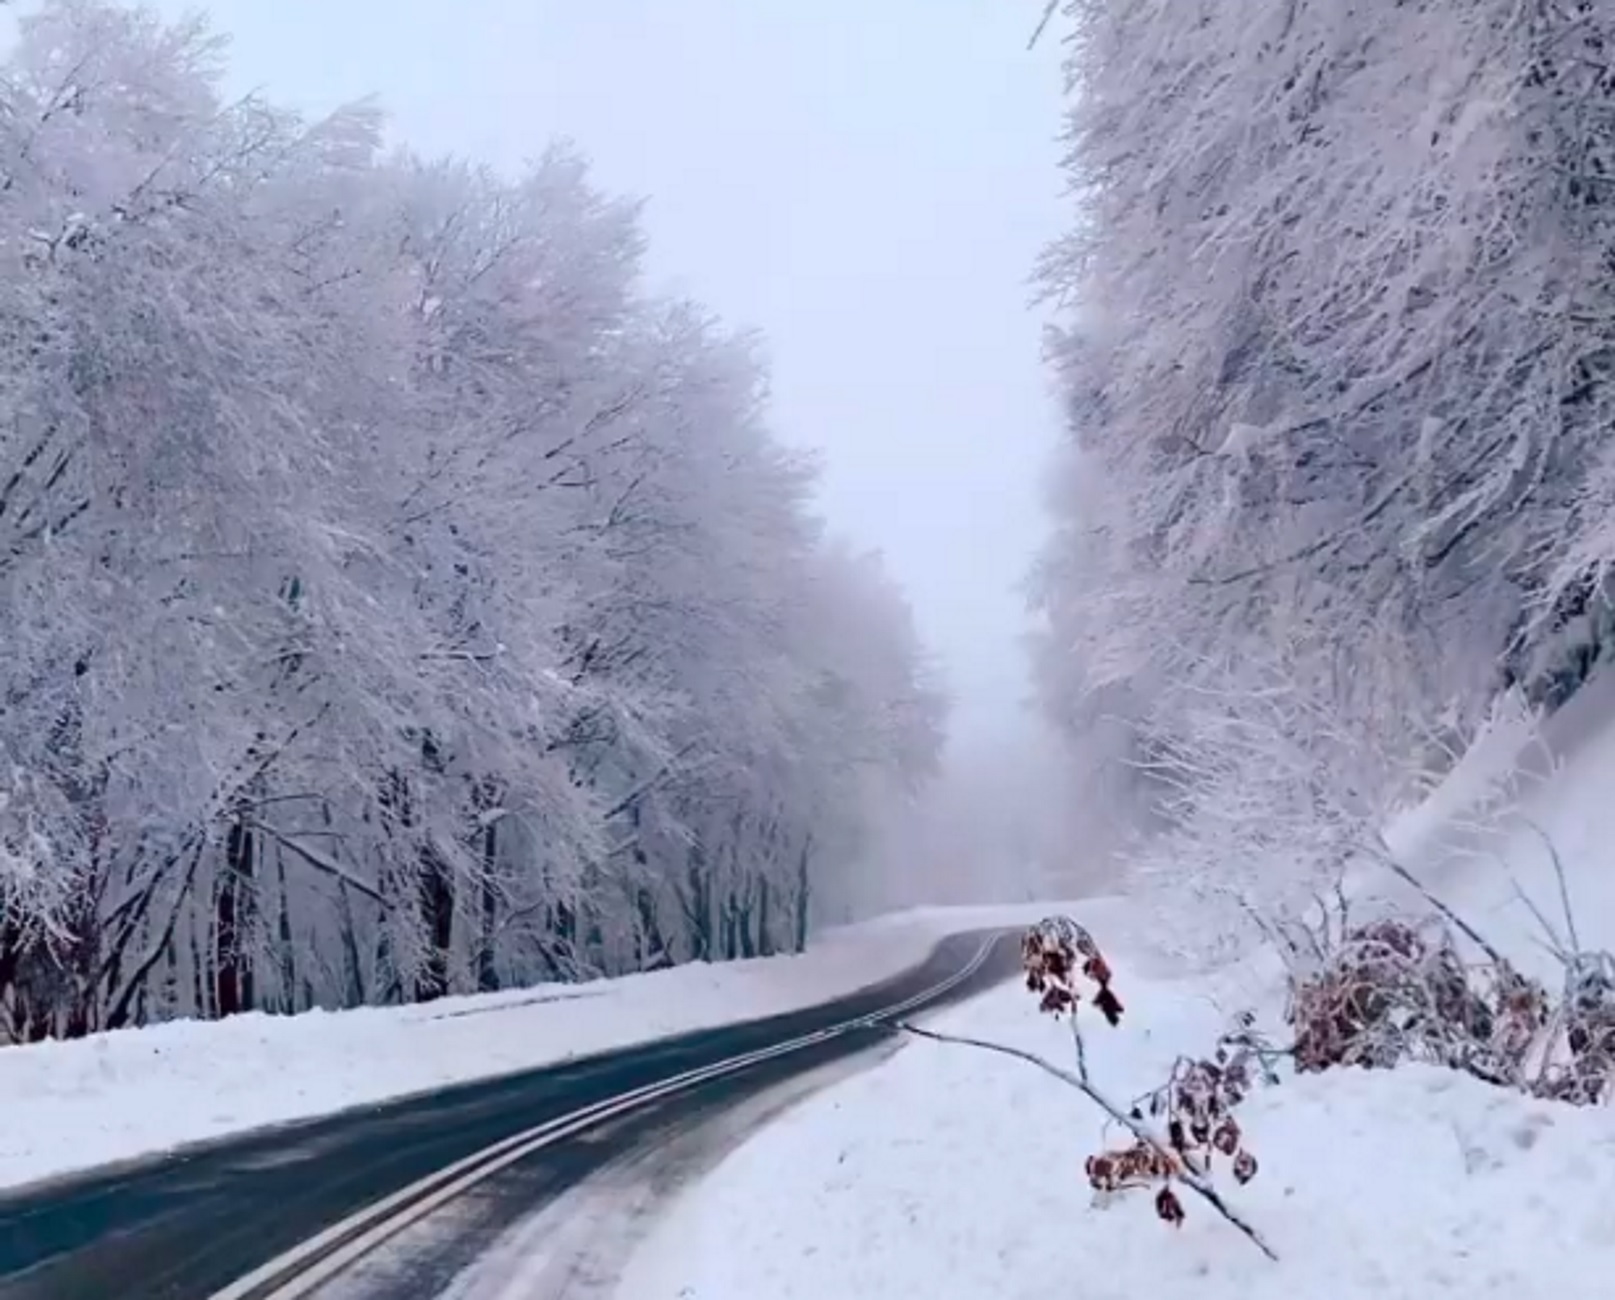 Καιρός – Φλώρινα: Ο χιονισμένος δρόμος σε ένα παραμυθένιο σκηνικό που γίνεται viral